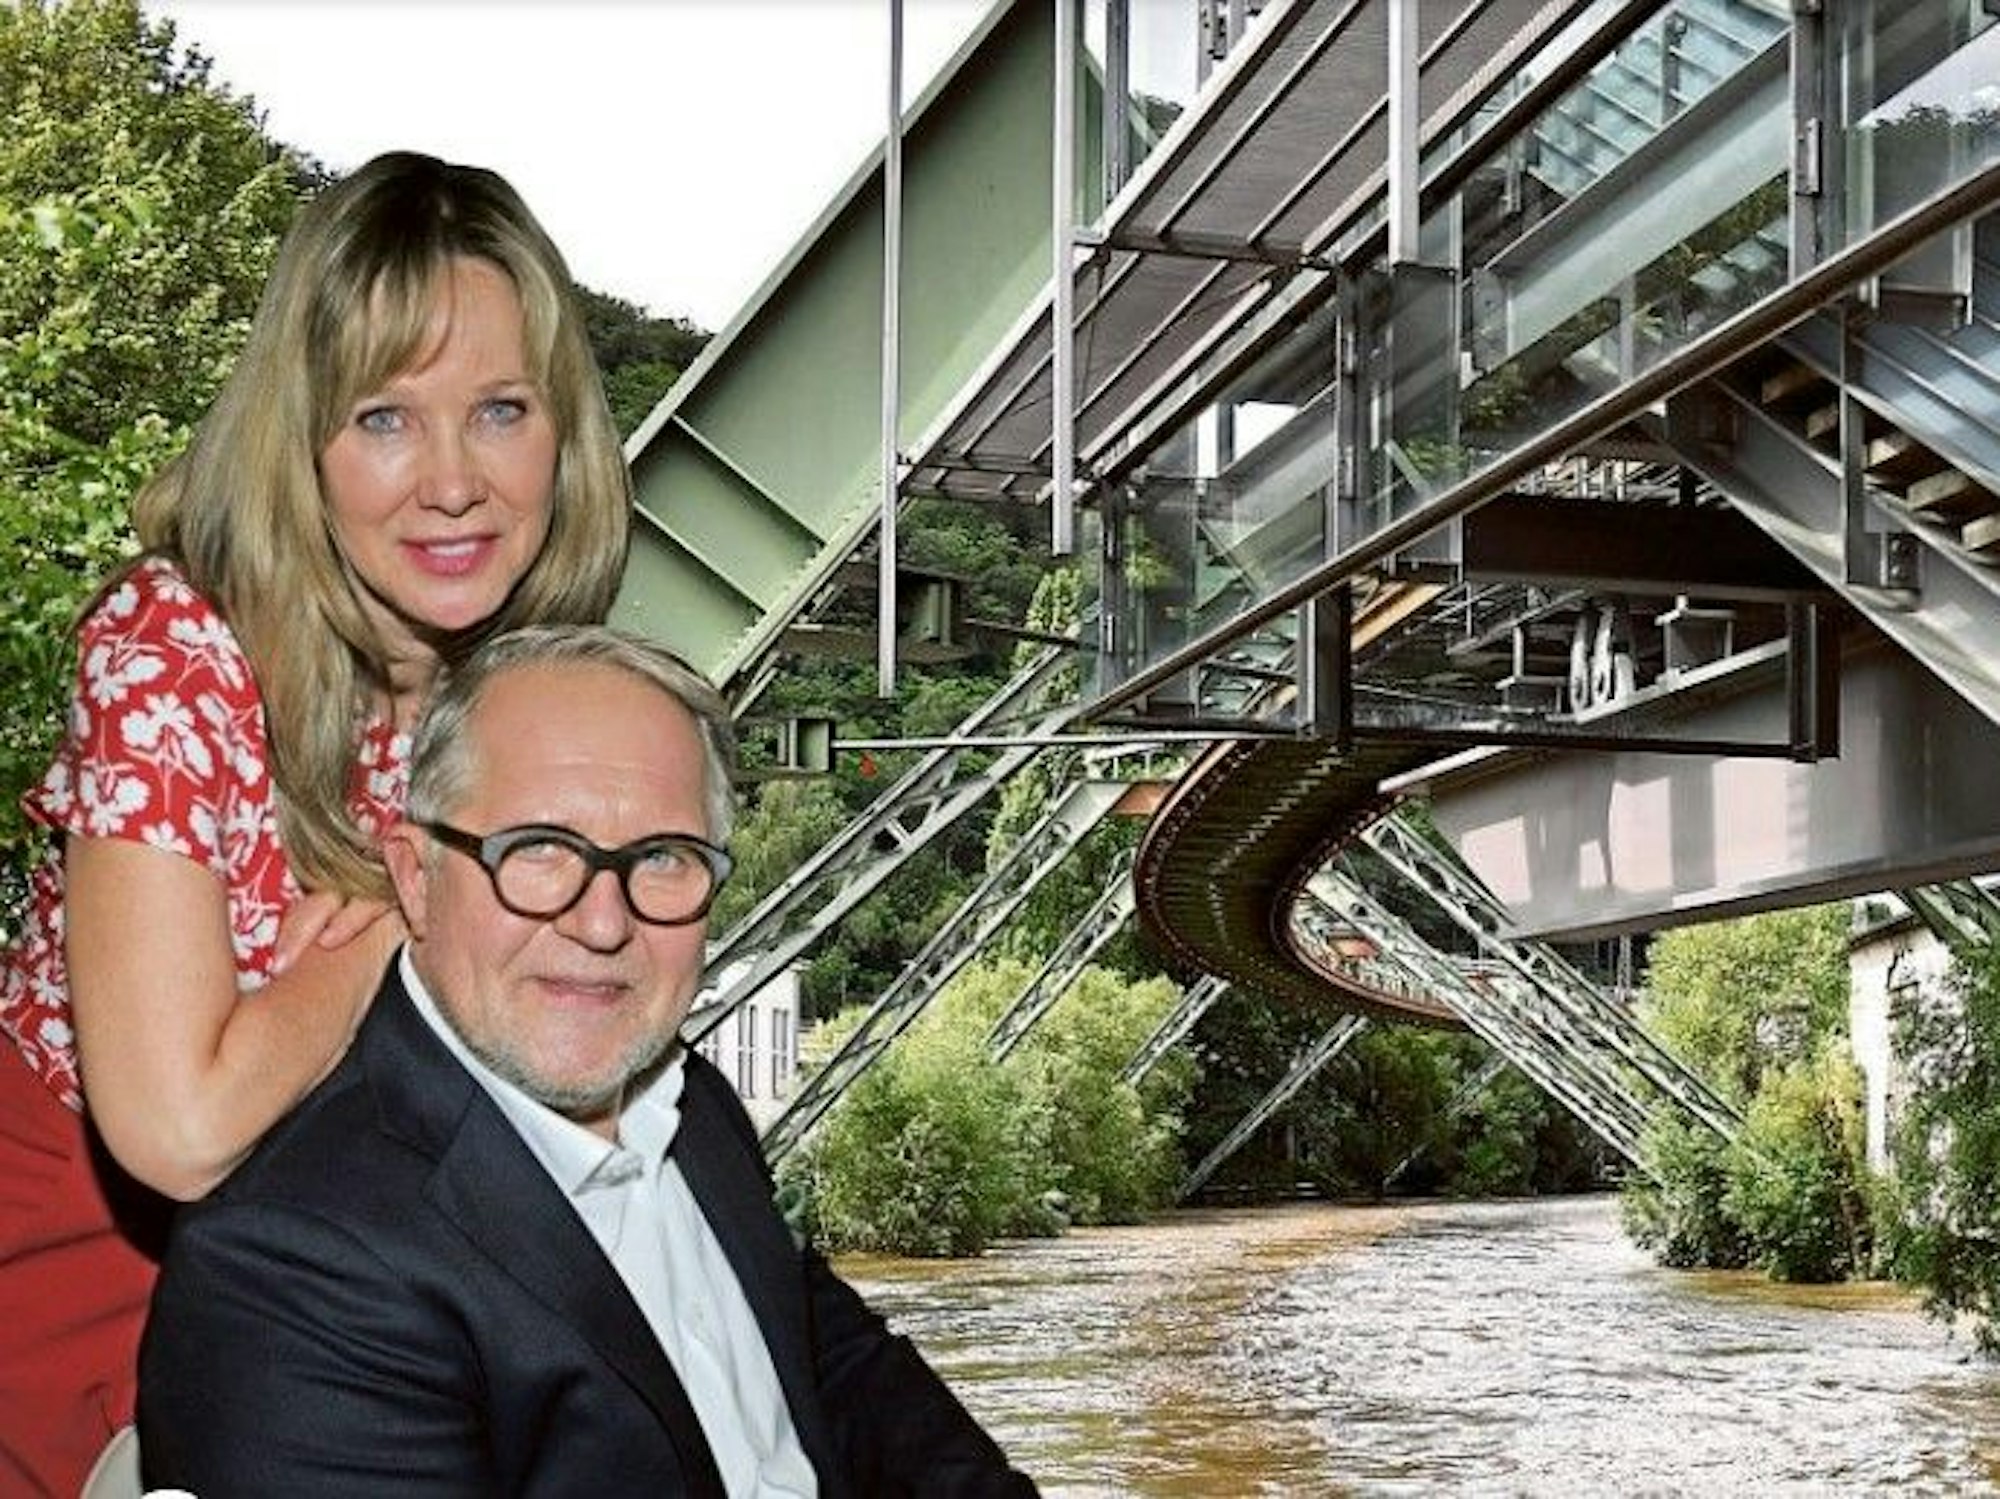 Ann-Kathrin Kramer und Harald Krassnitzer leben in Wuppertal